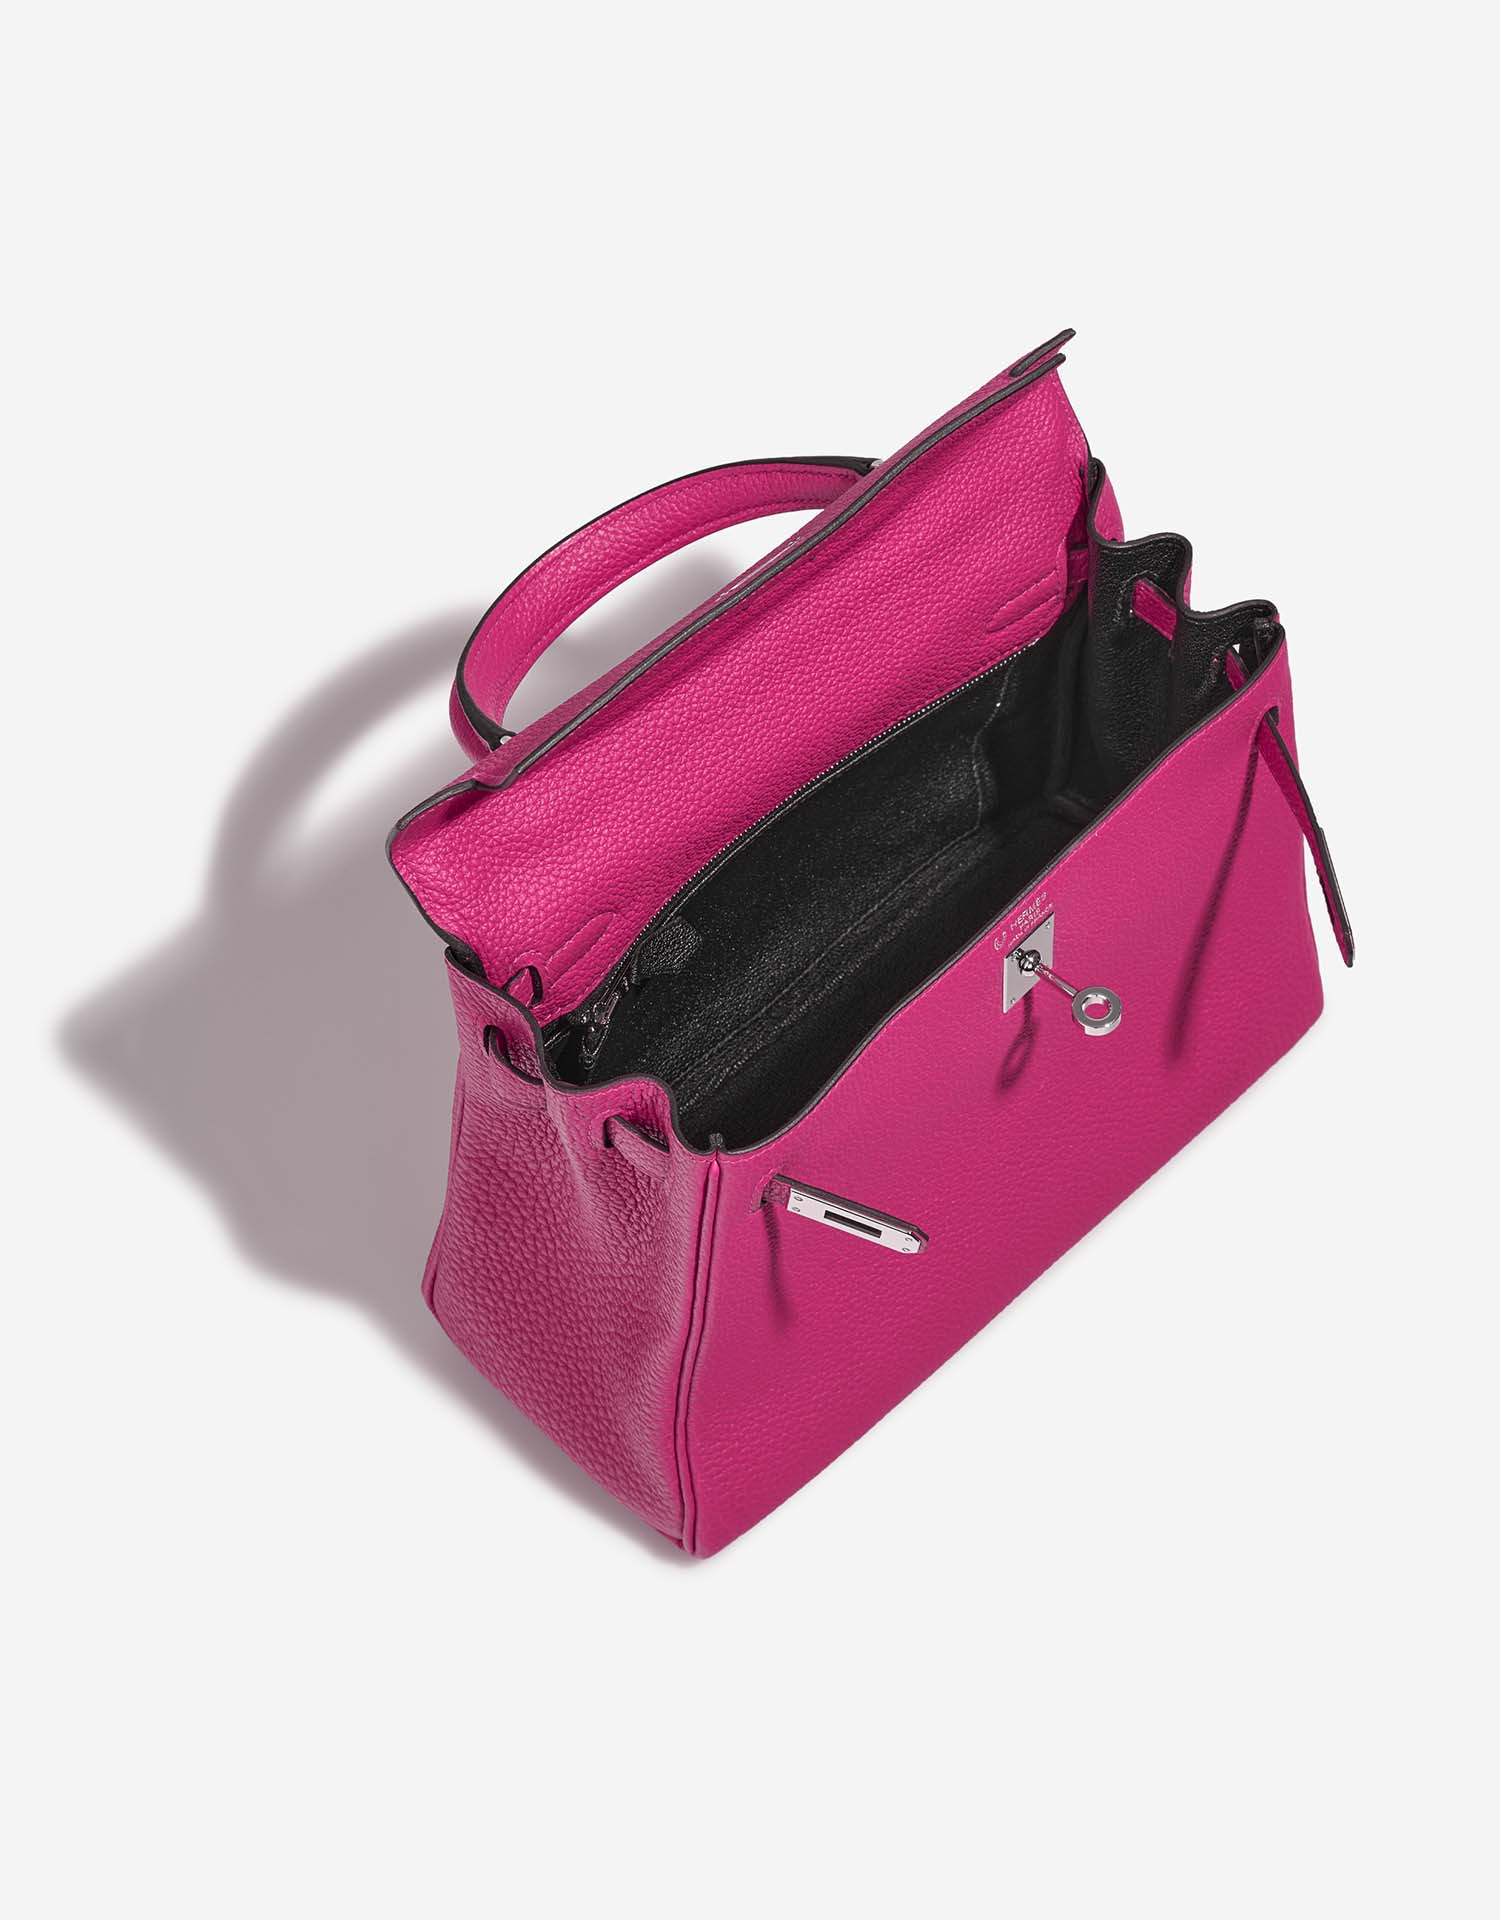 Hermès KellyHSS 25 RosePourpre-Black Inside  | Sell your designer bag on Saclab.com